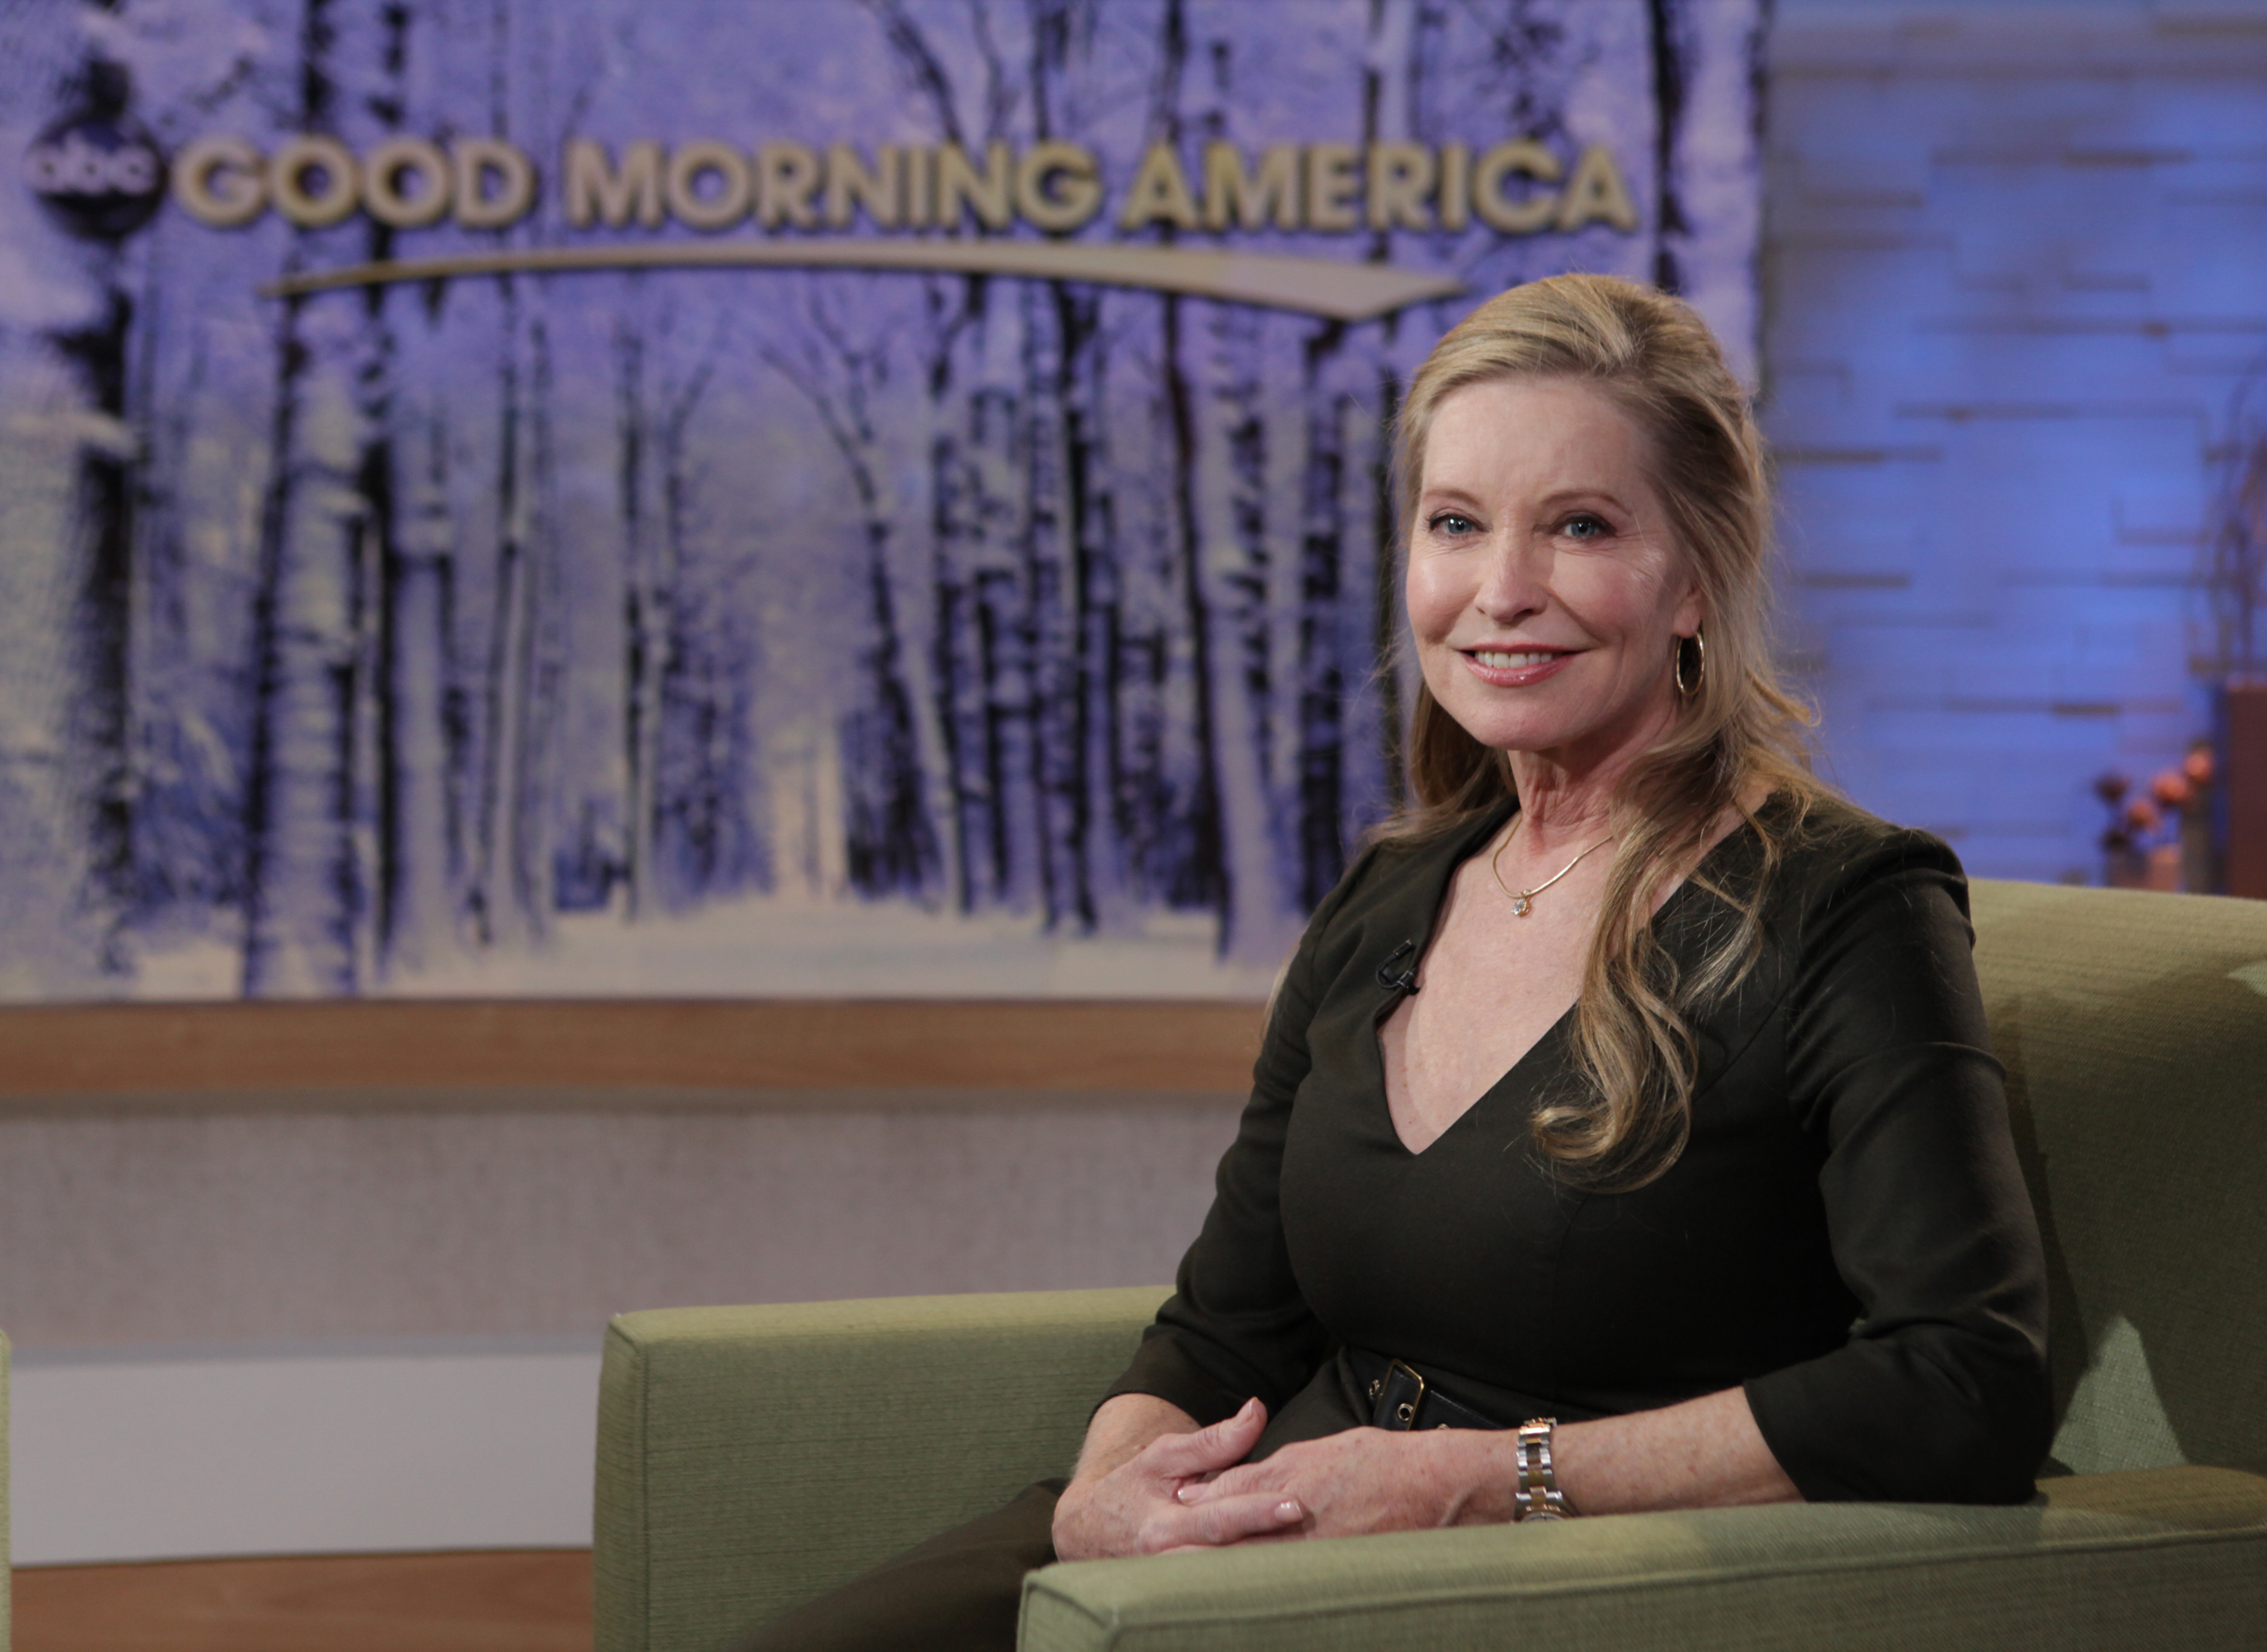 Lisa Niemi dans l'émission "Good Morning America" le 12 janvier 2012 | Source : Getty Images